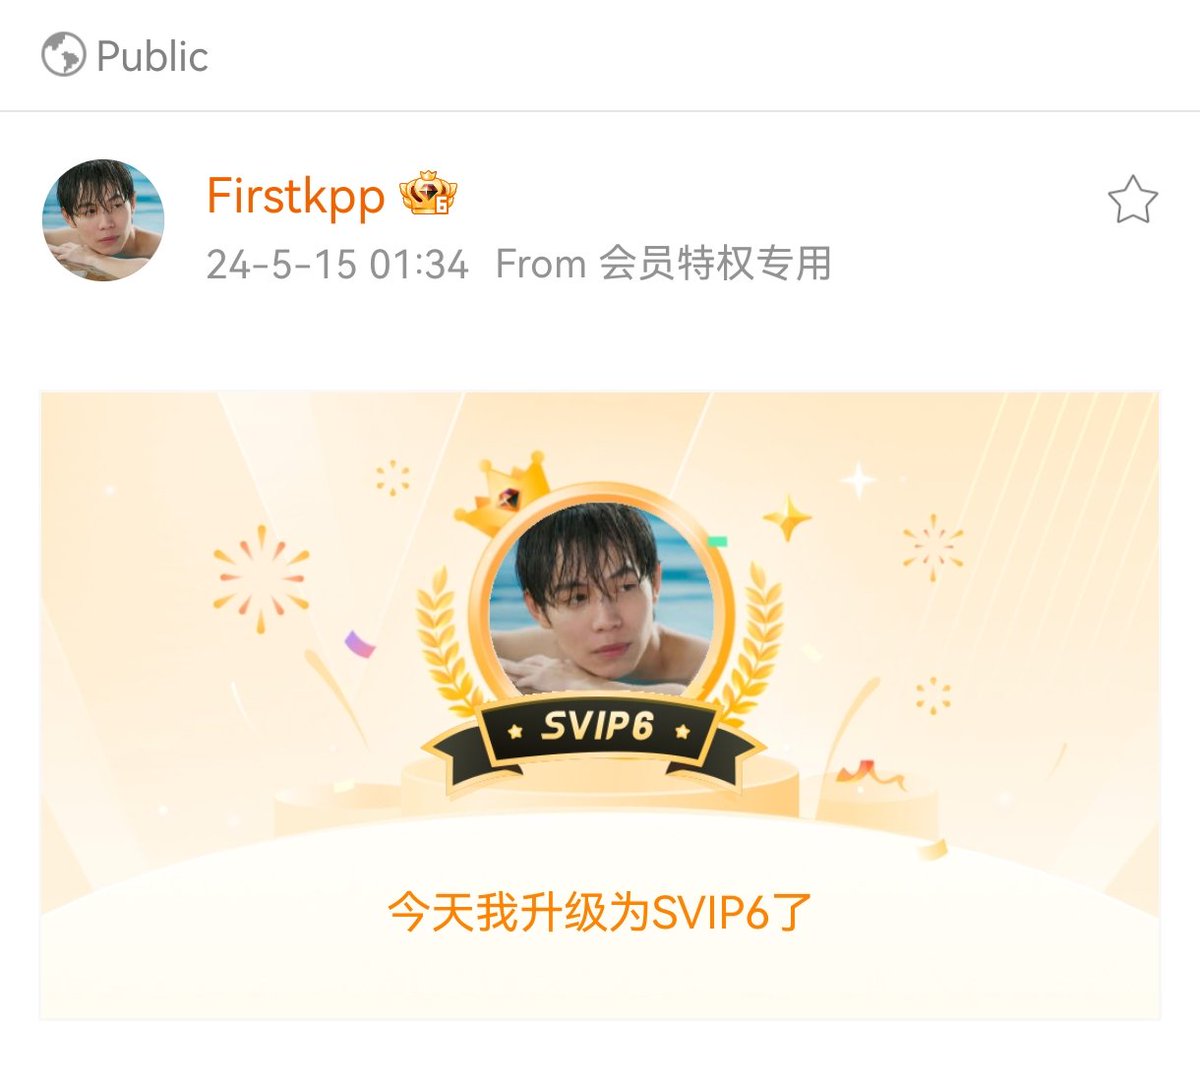 ตื่นเช้าคิดว่านายอัพเดท weibo แล้ว ตื่นเต้นมากแล้วเปิดทันที……และกลายเป็นว่า🙉นายจํารหัสผ่านได้ป่ะ55555555555 @Firstkpp